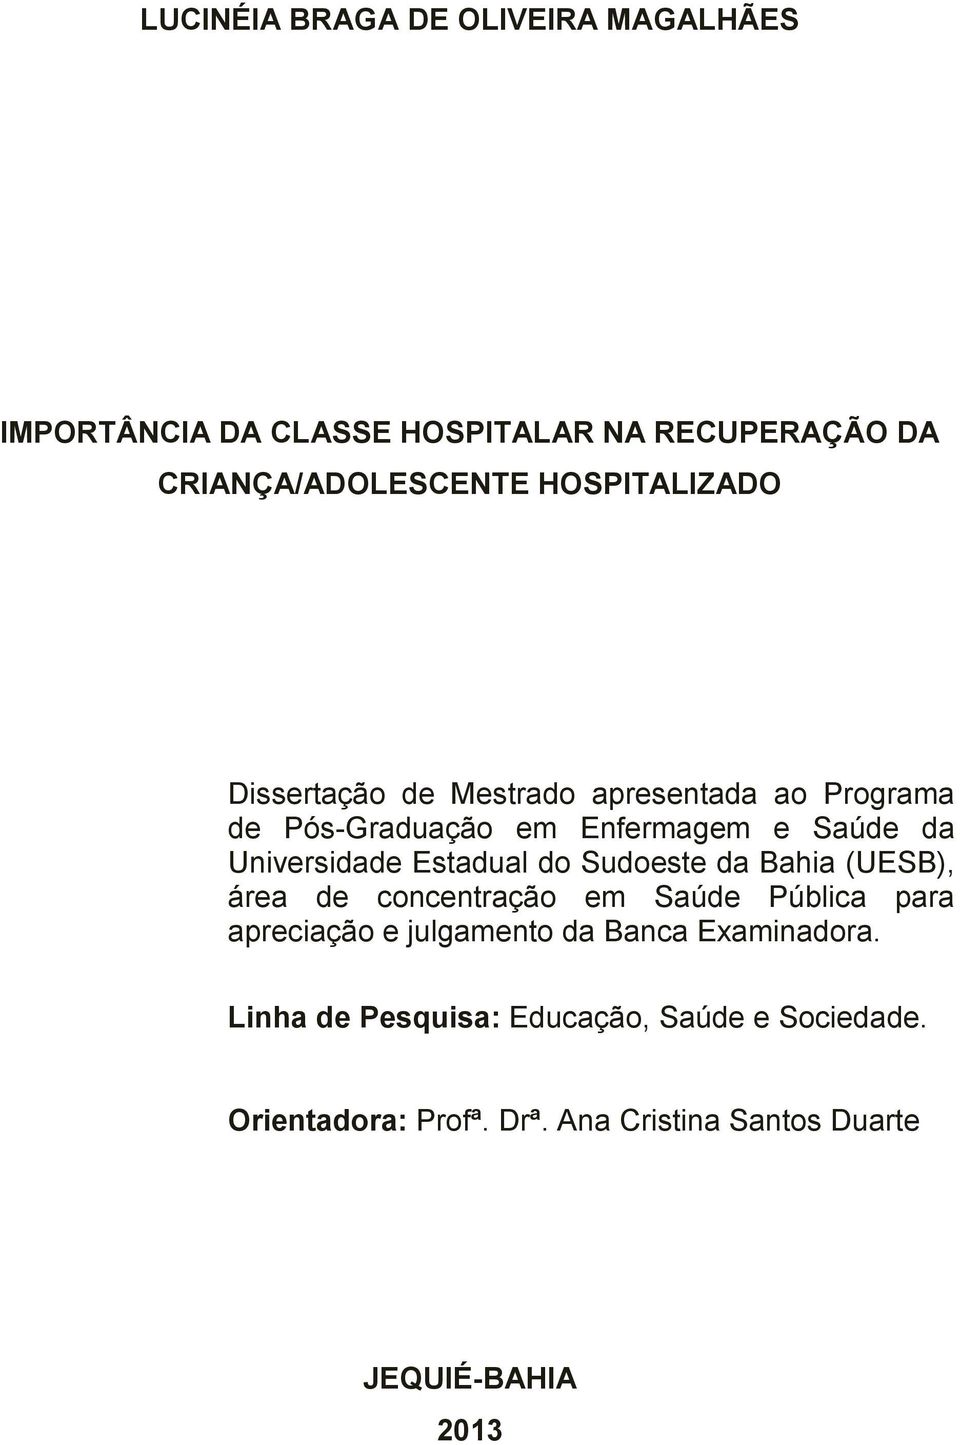 Estadual do Sudoeste da Bahia (UESB), área de concentração em Saúde Pública para apreciação e julgamento da Banca